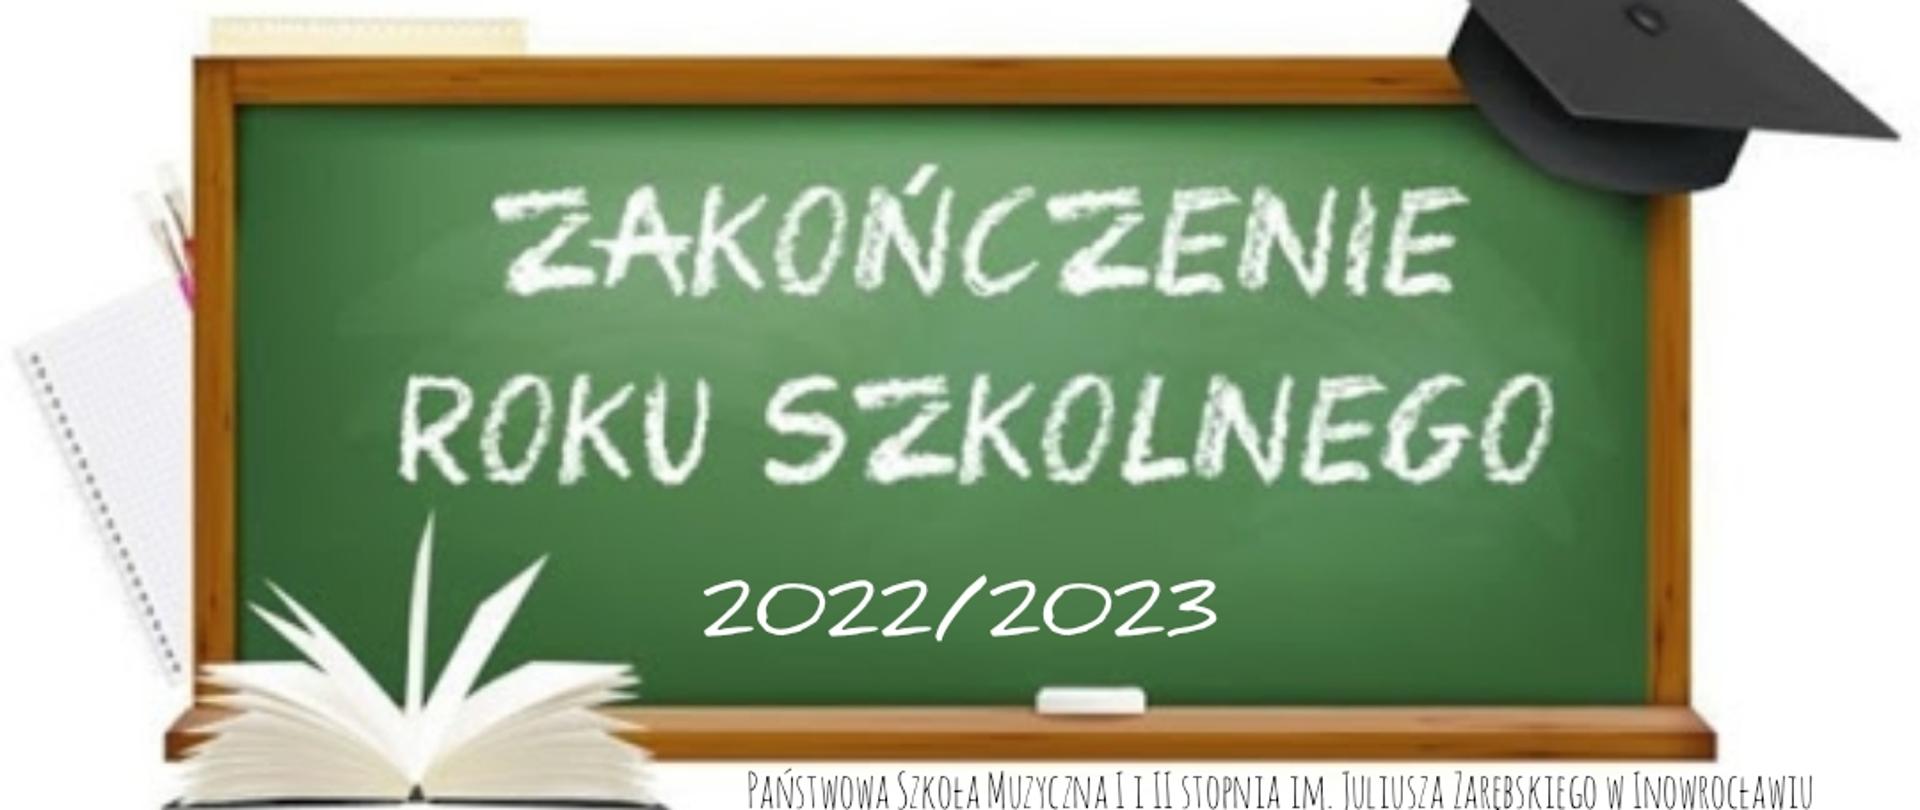 Zakończenie Roku Szkolnego 2022/2023 Napis na tablicy szkolnej